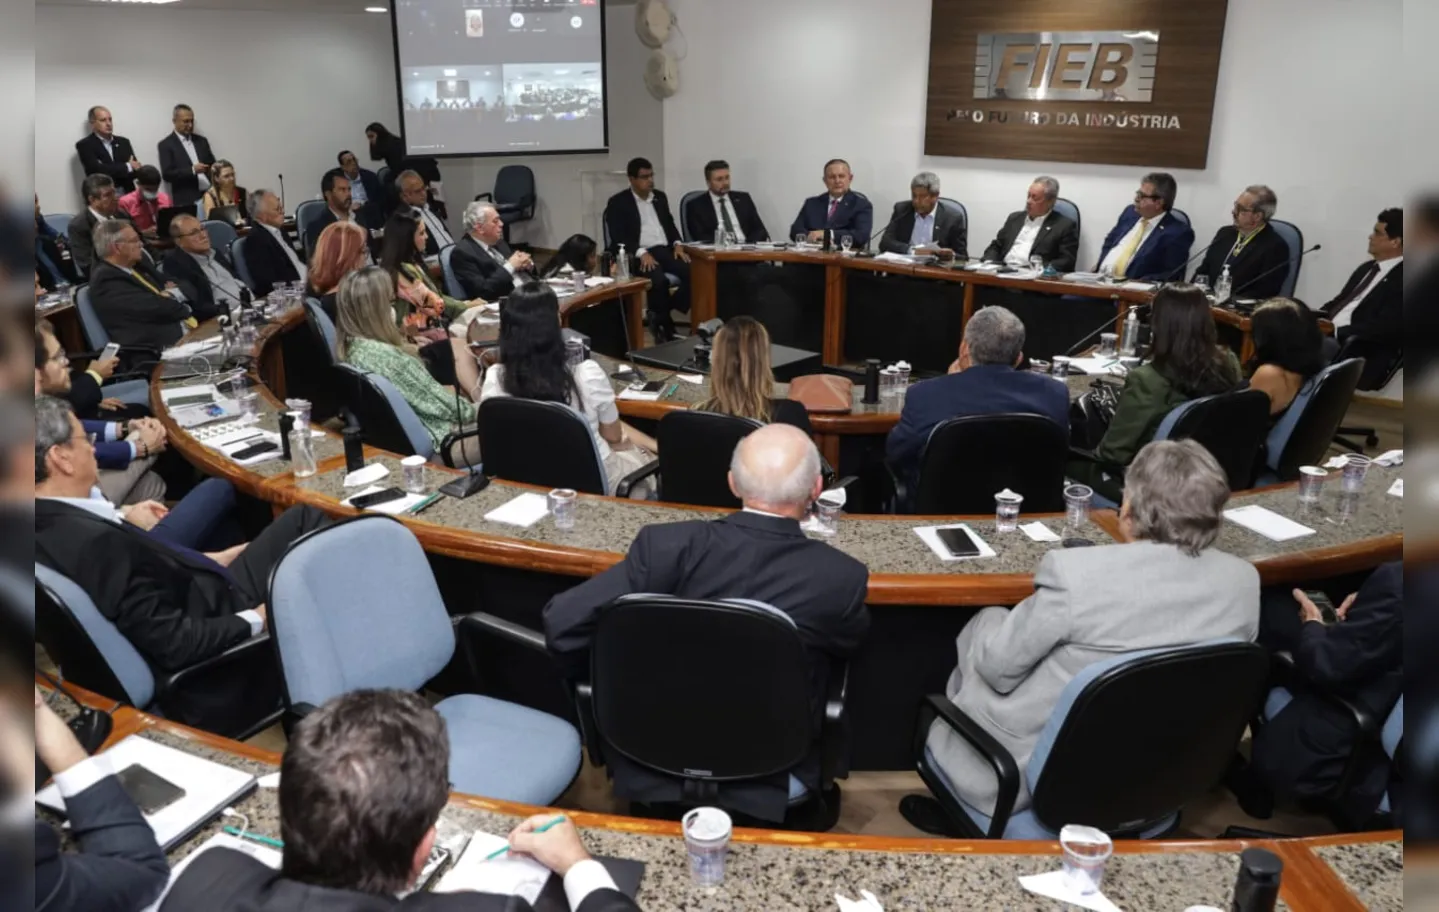 Secretário Manoel Vitório participa do evento de comemoração dos 75 anos da FIEB